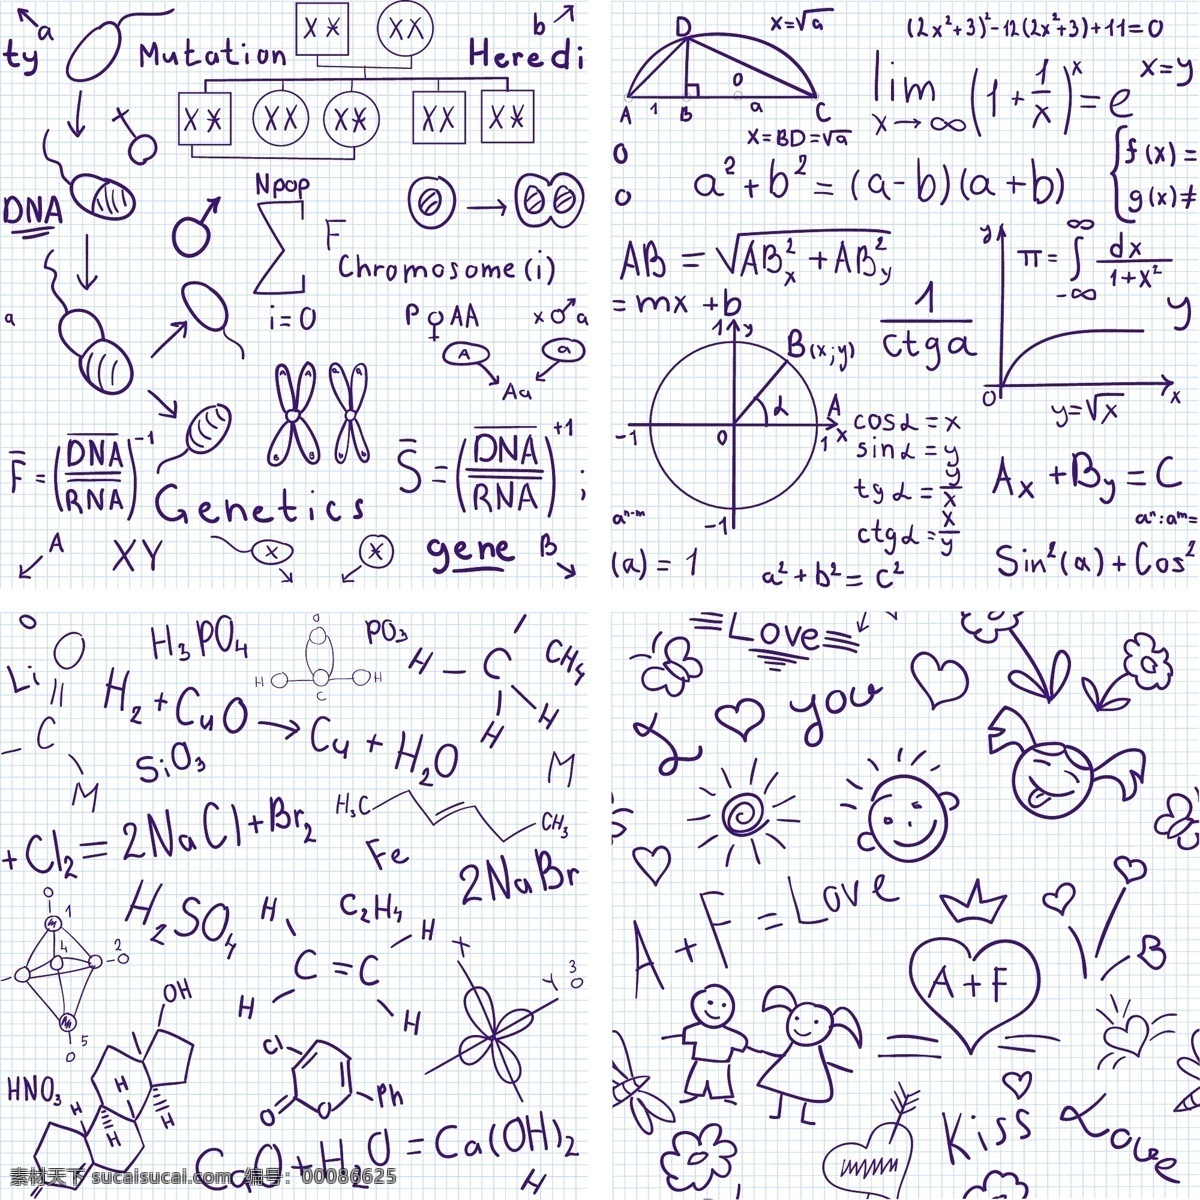 算术 方程式 计算 符号 数字 化学式 化学符号 手绘图案符号 数学题 分子结构图 微积分 背景 底纹 矢量 底纹背景 底纹边框